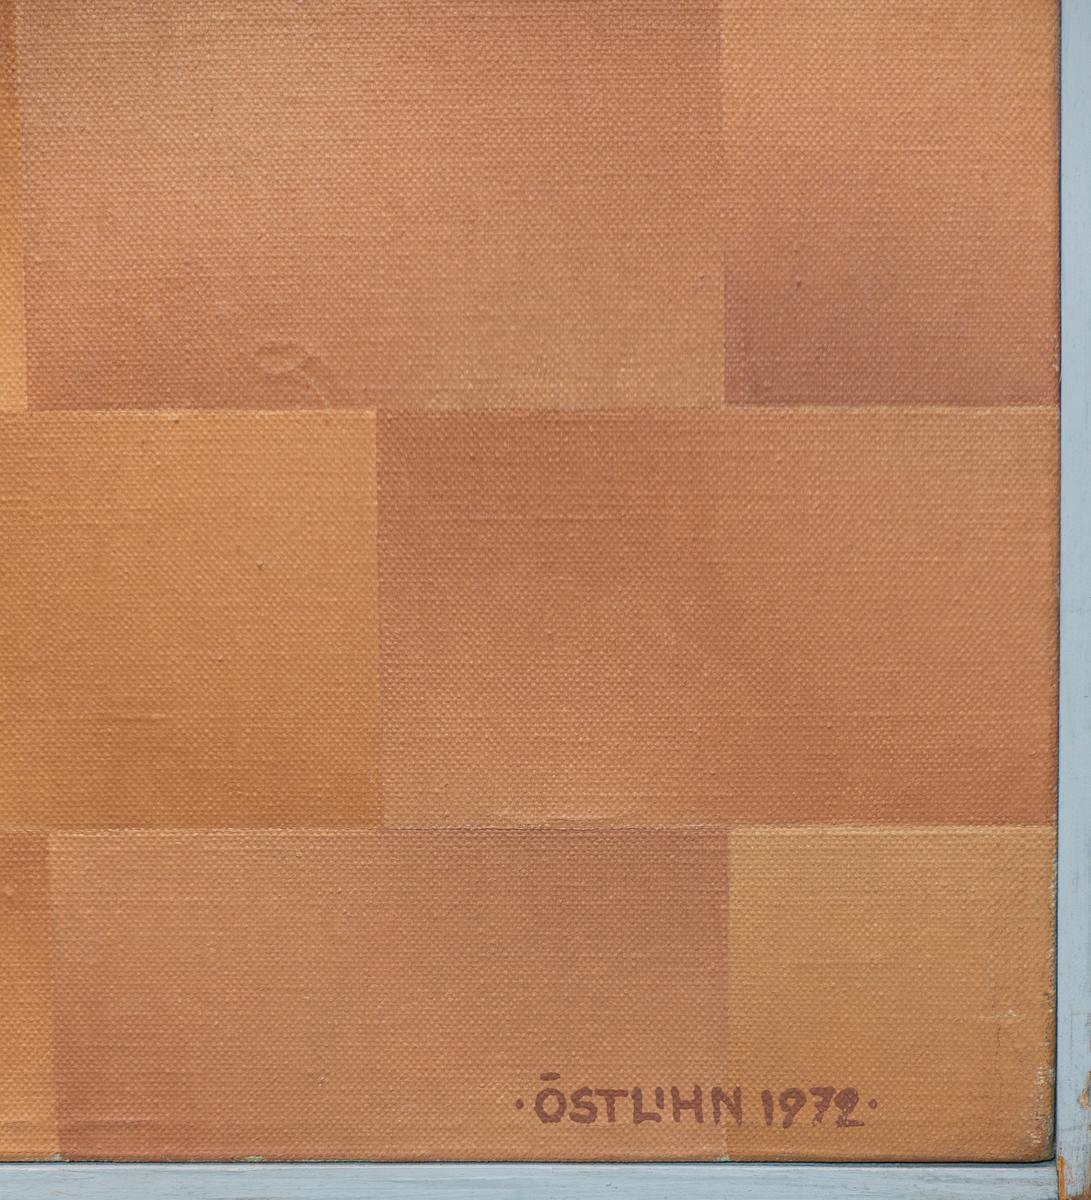 Oljemålning, "Bowery Wall" av Barbro Östlihn, 1972. Målningen skapad under konstnärens tid i New York där hon studerade och inspirerades av Manhattans arkitektur.